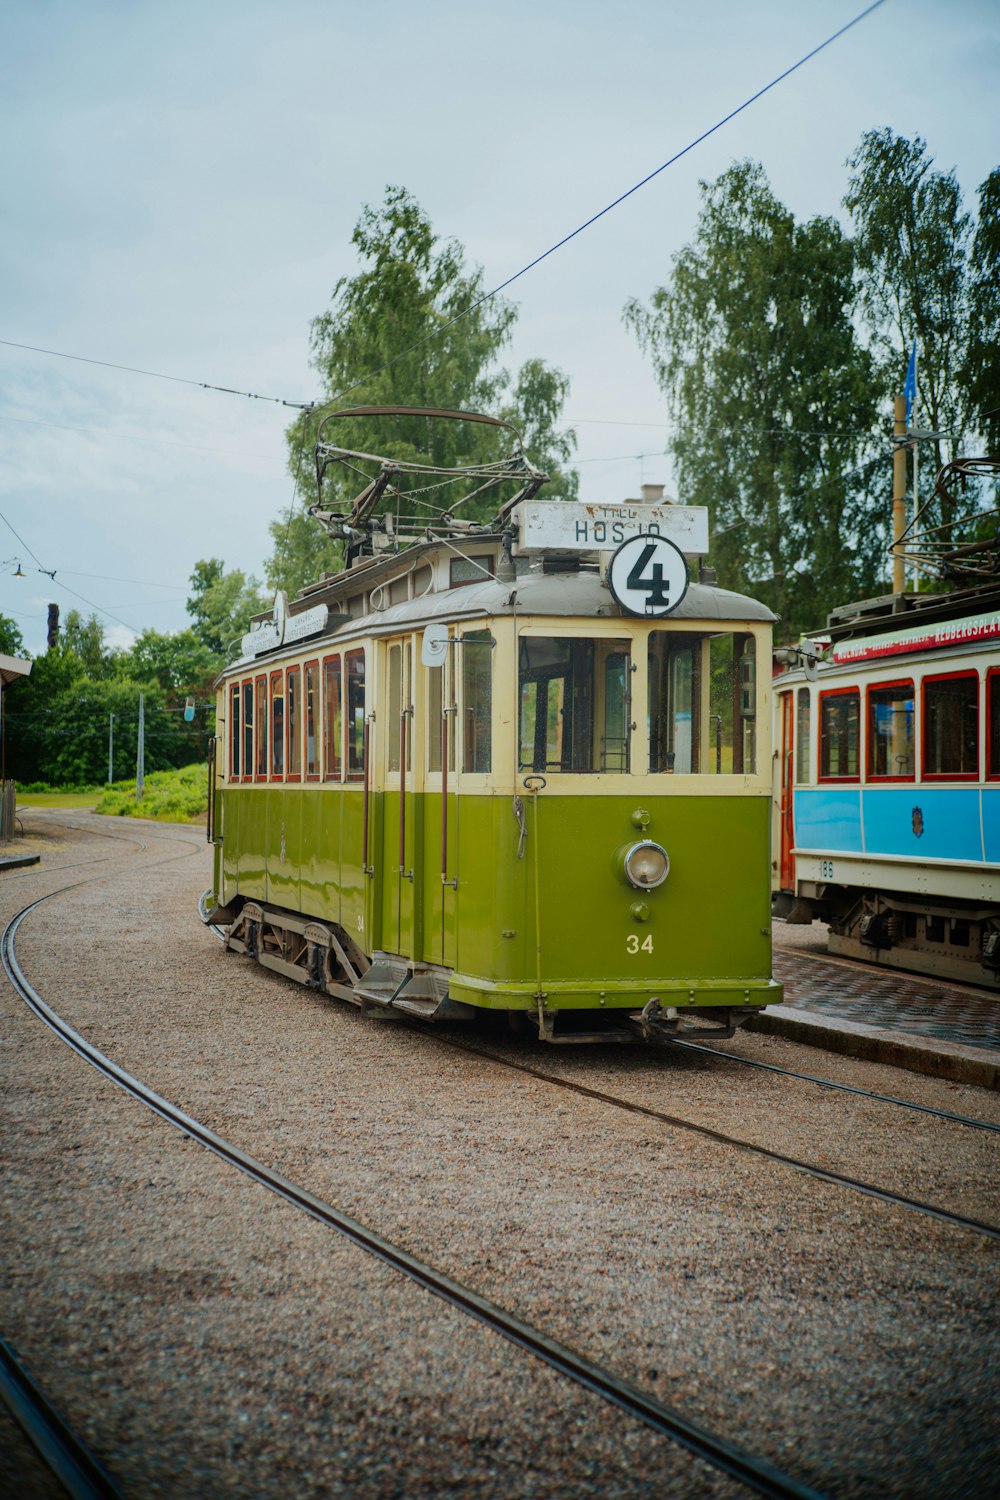 a green trolley car sitting on the tracks